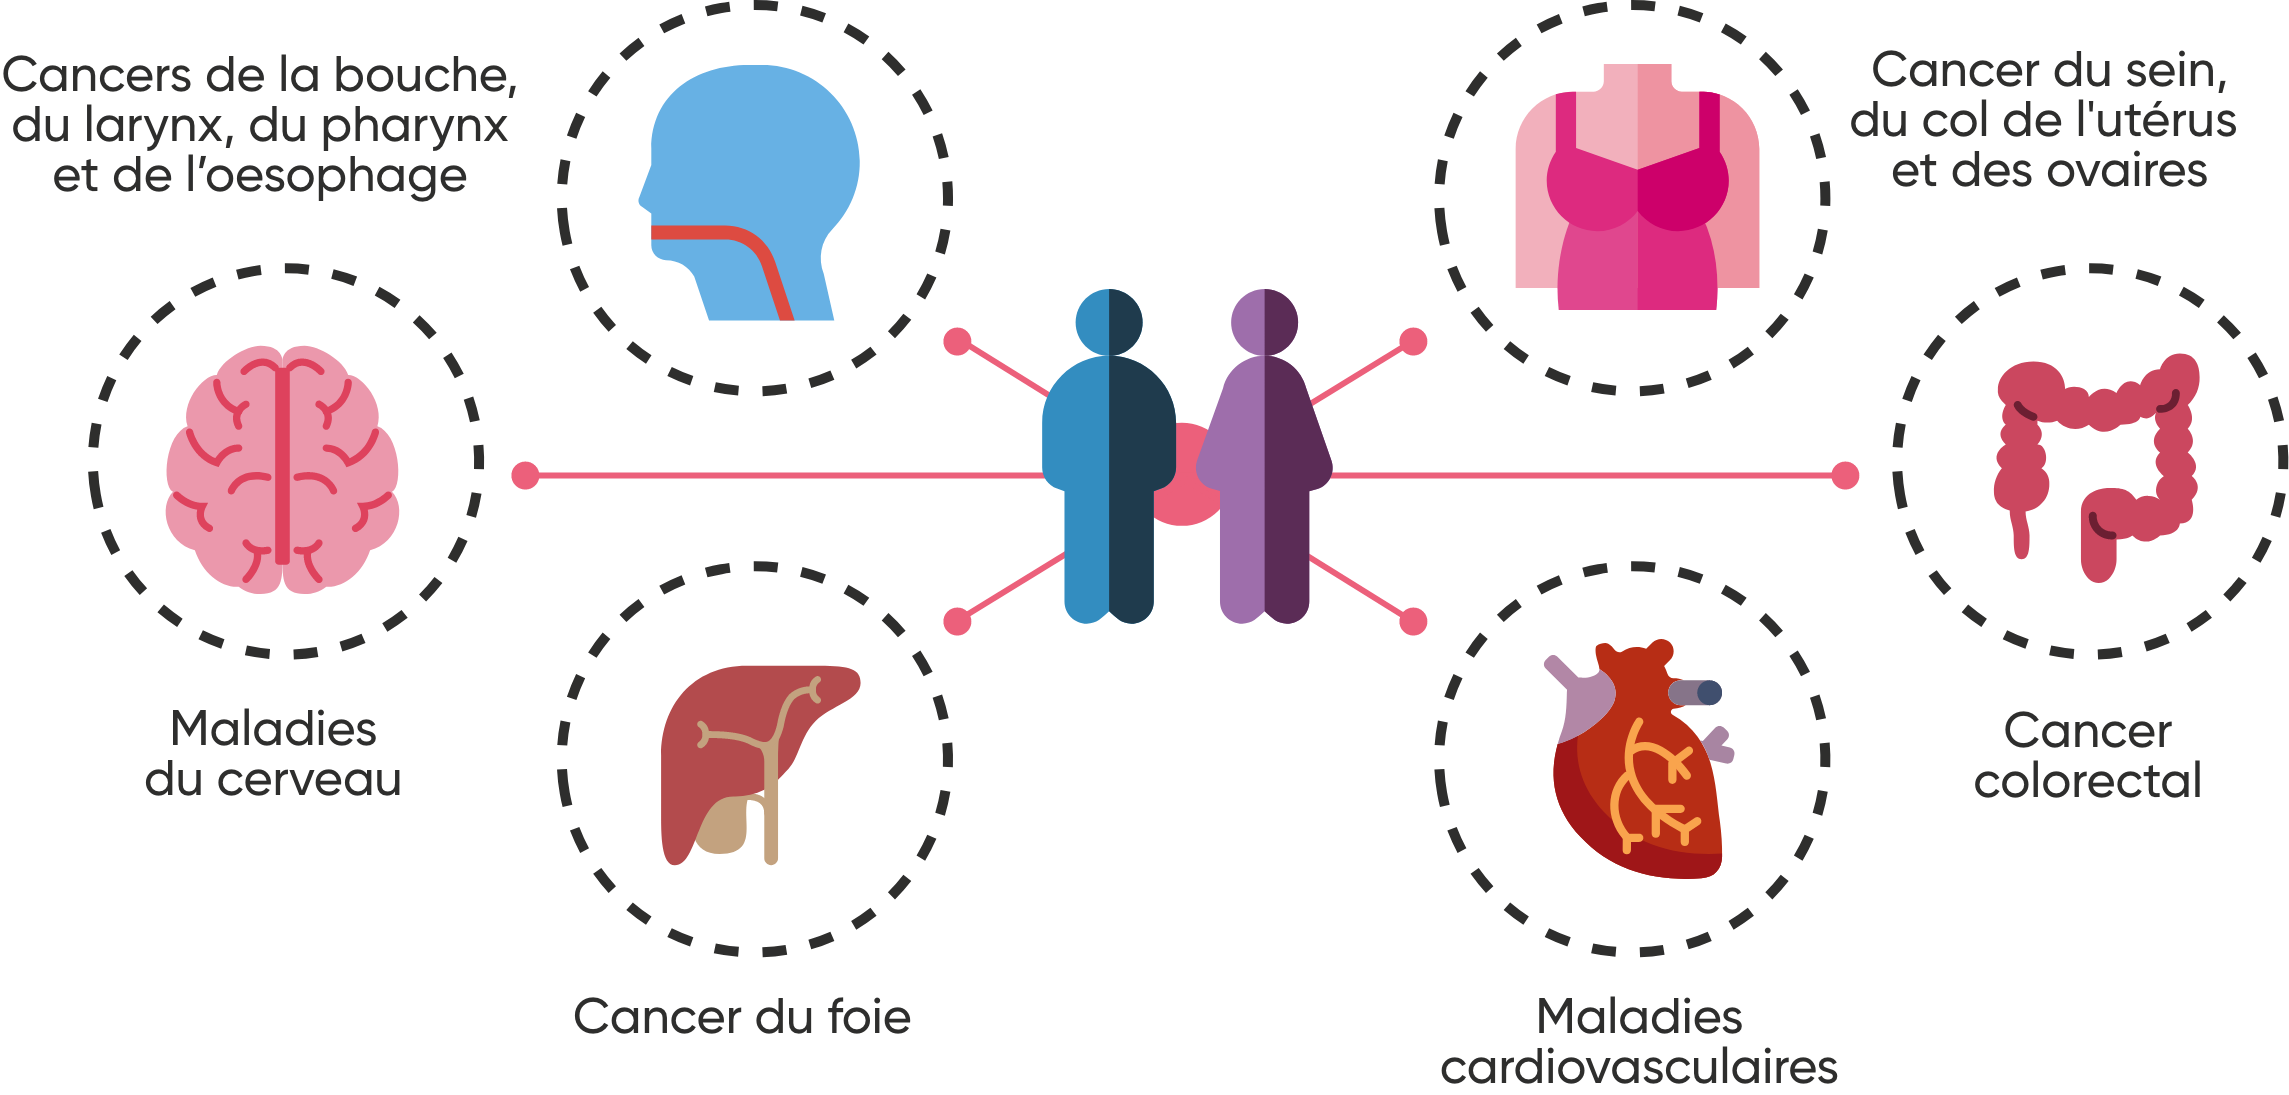 Image montrant la localisation des cancers favorisés par la consommation d'alcool : cancers de la bouche, du larynx, du pharynx et de l'oesophage, cancer du sein, du col de l'utérus et des ovaires, cancer colorectal, maladies cardiovasculaires, cancer du foie, maladies du cerveau